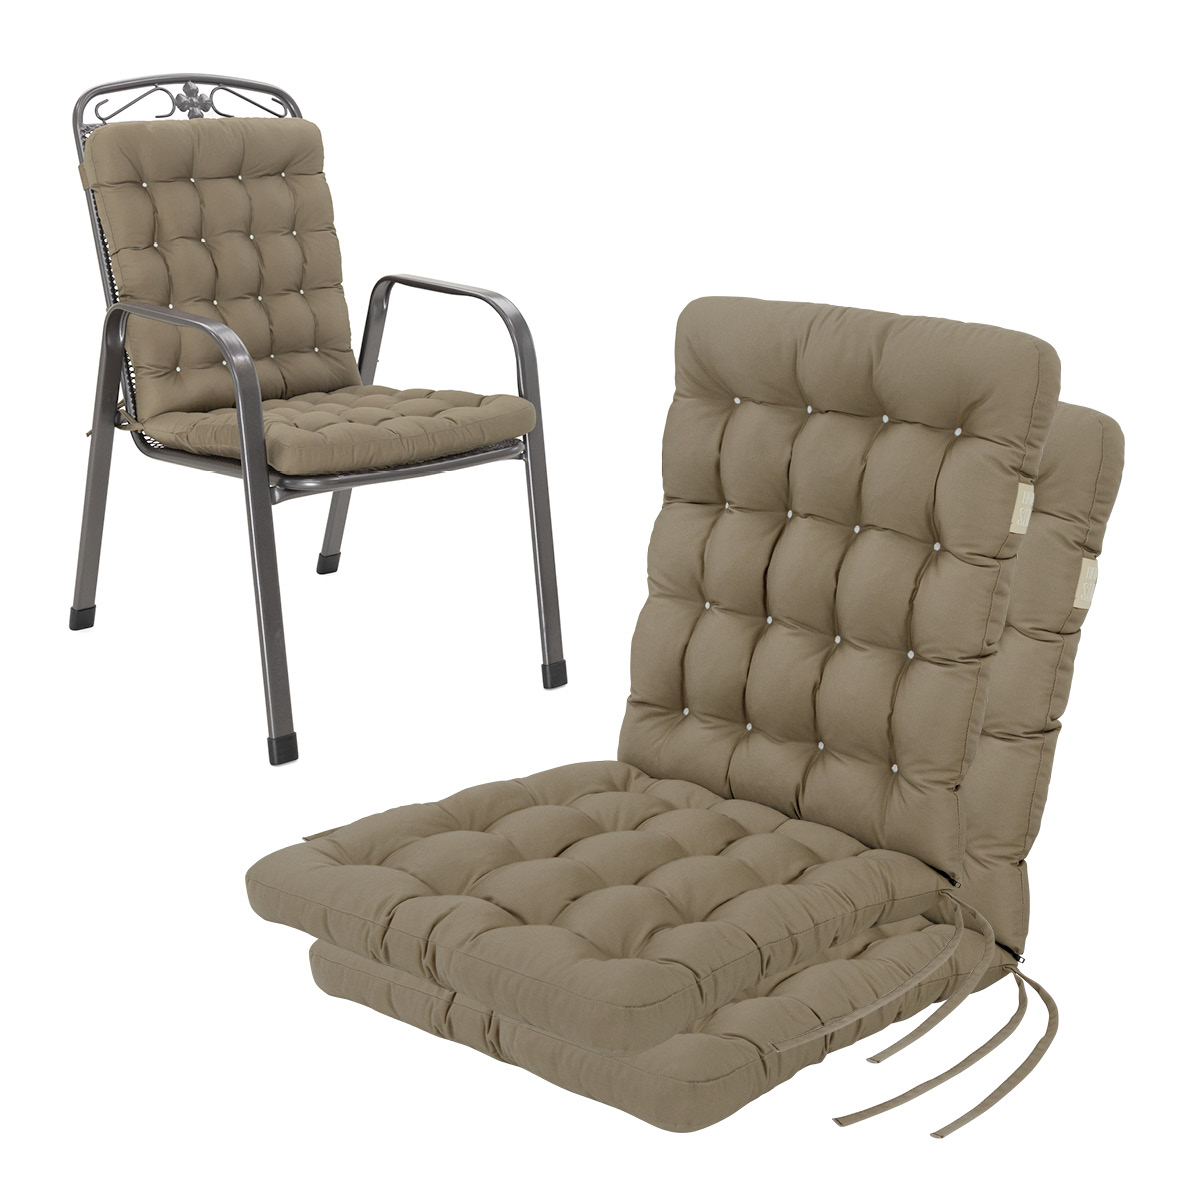 Niedriglehner Auflagen goldbraun | 1 St. | bequemes Sitzpolster, orthopädische gepolsterte Sitzauflage für Stapelstühle / Gartenstühle | HAVE A SEAT Living